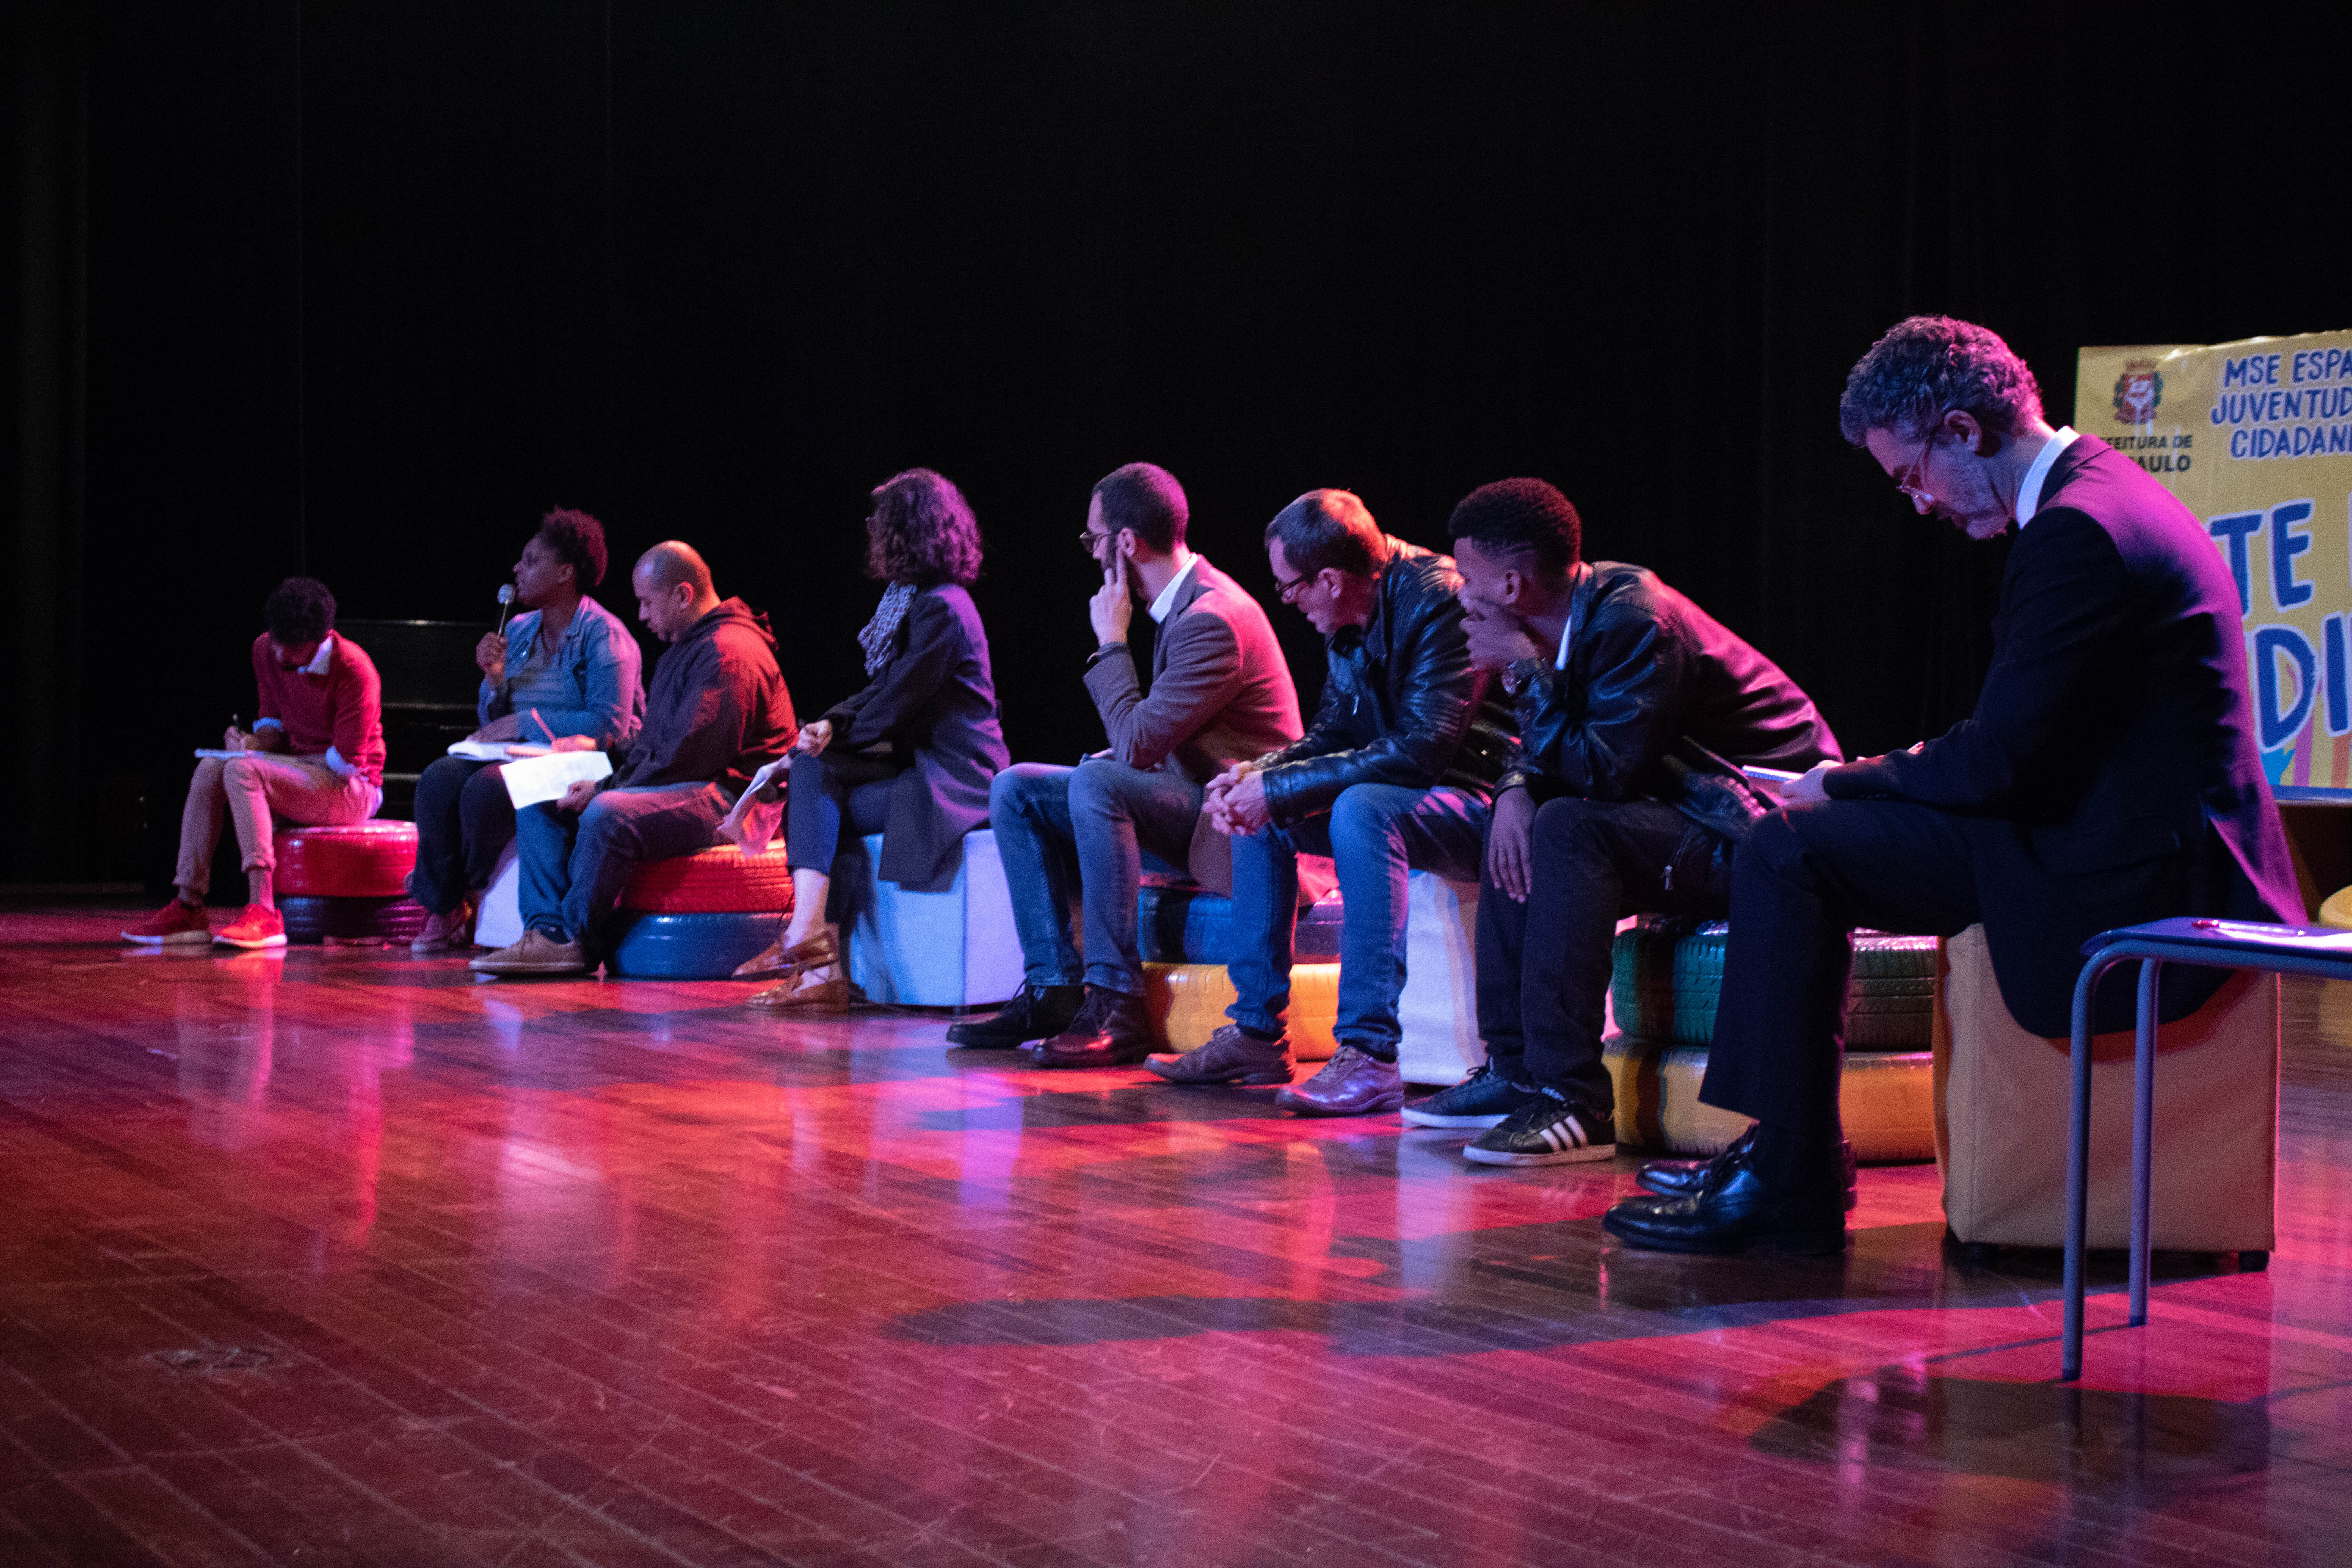 Oito palestrantes sentados no palco com um painel ao fundo escrito “Arte na medida”.